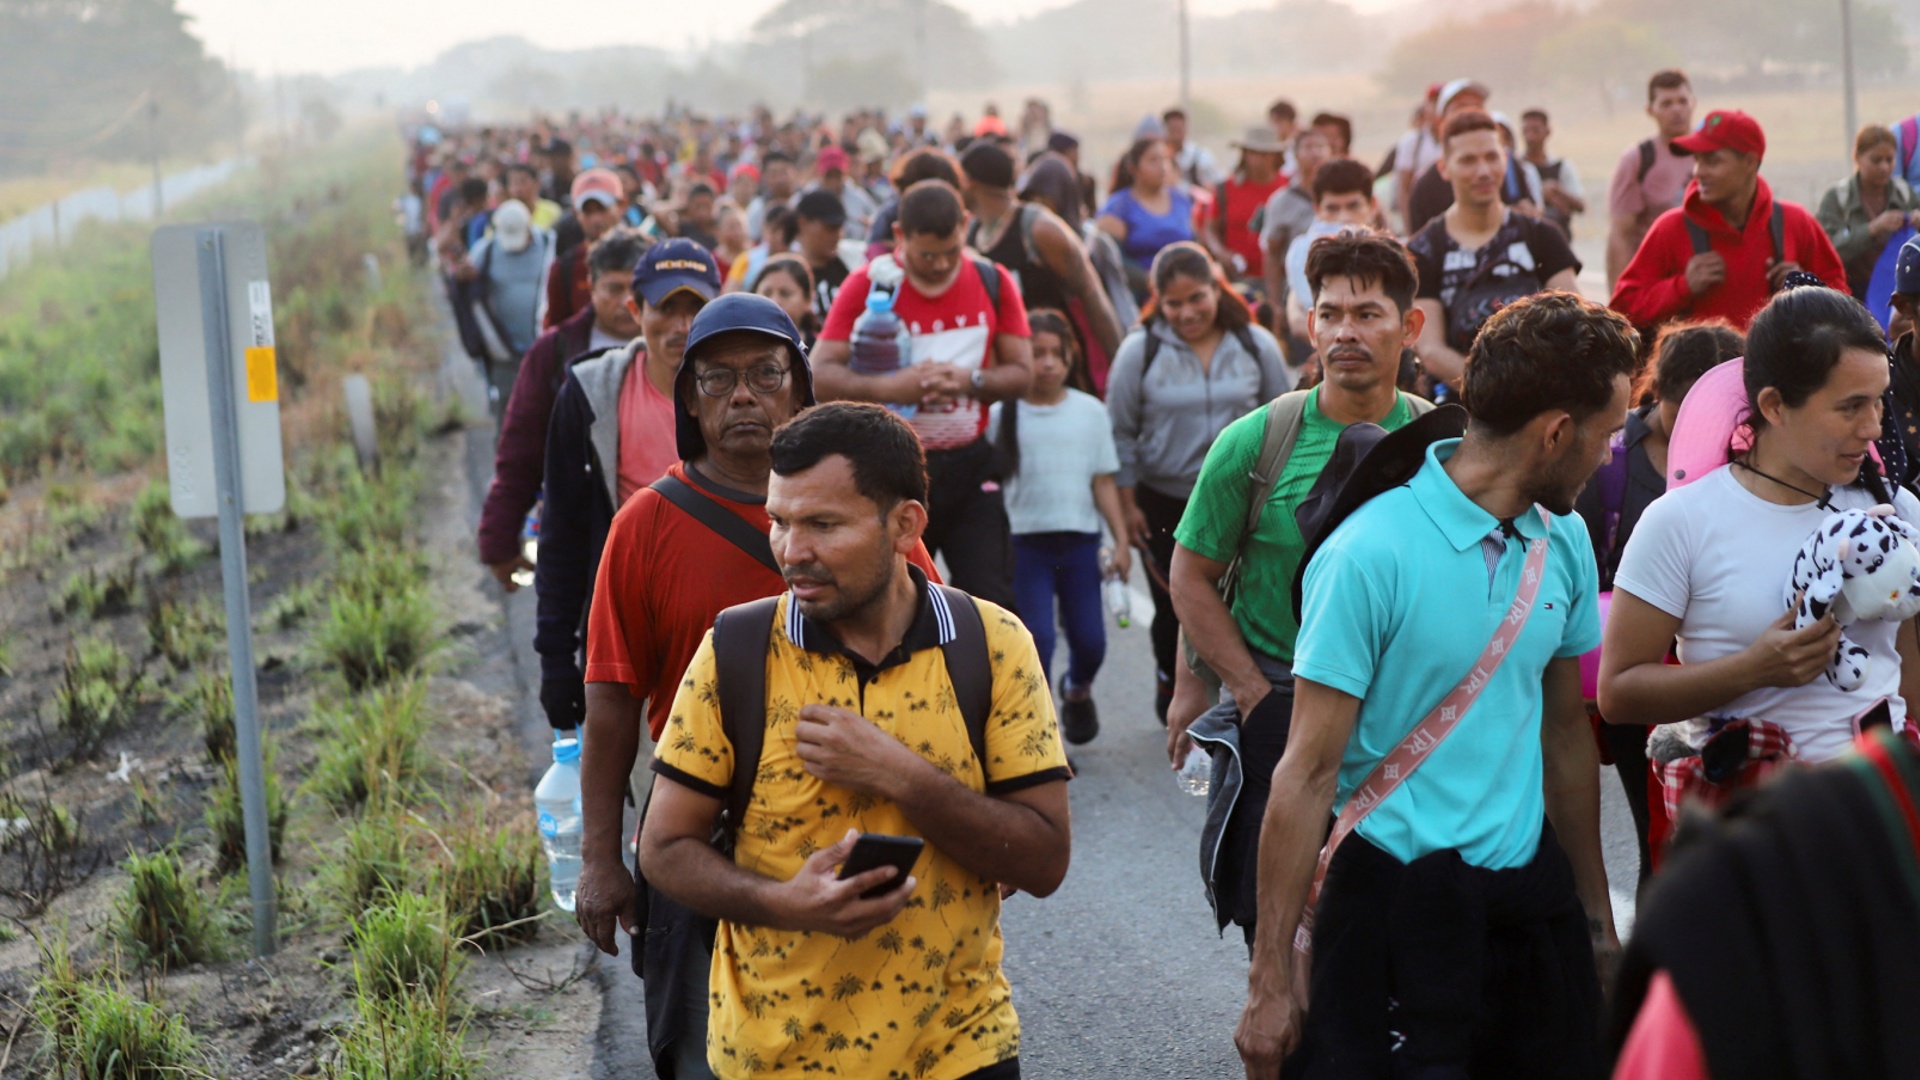 В Мексике разделённый караван мигрантов снова сформировался и идёт в США